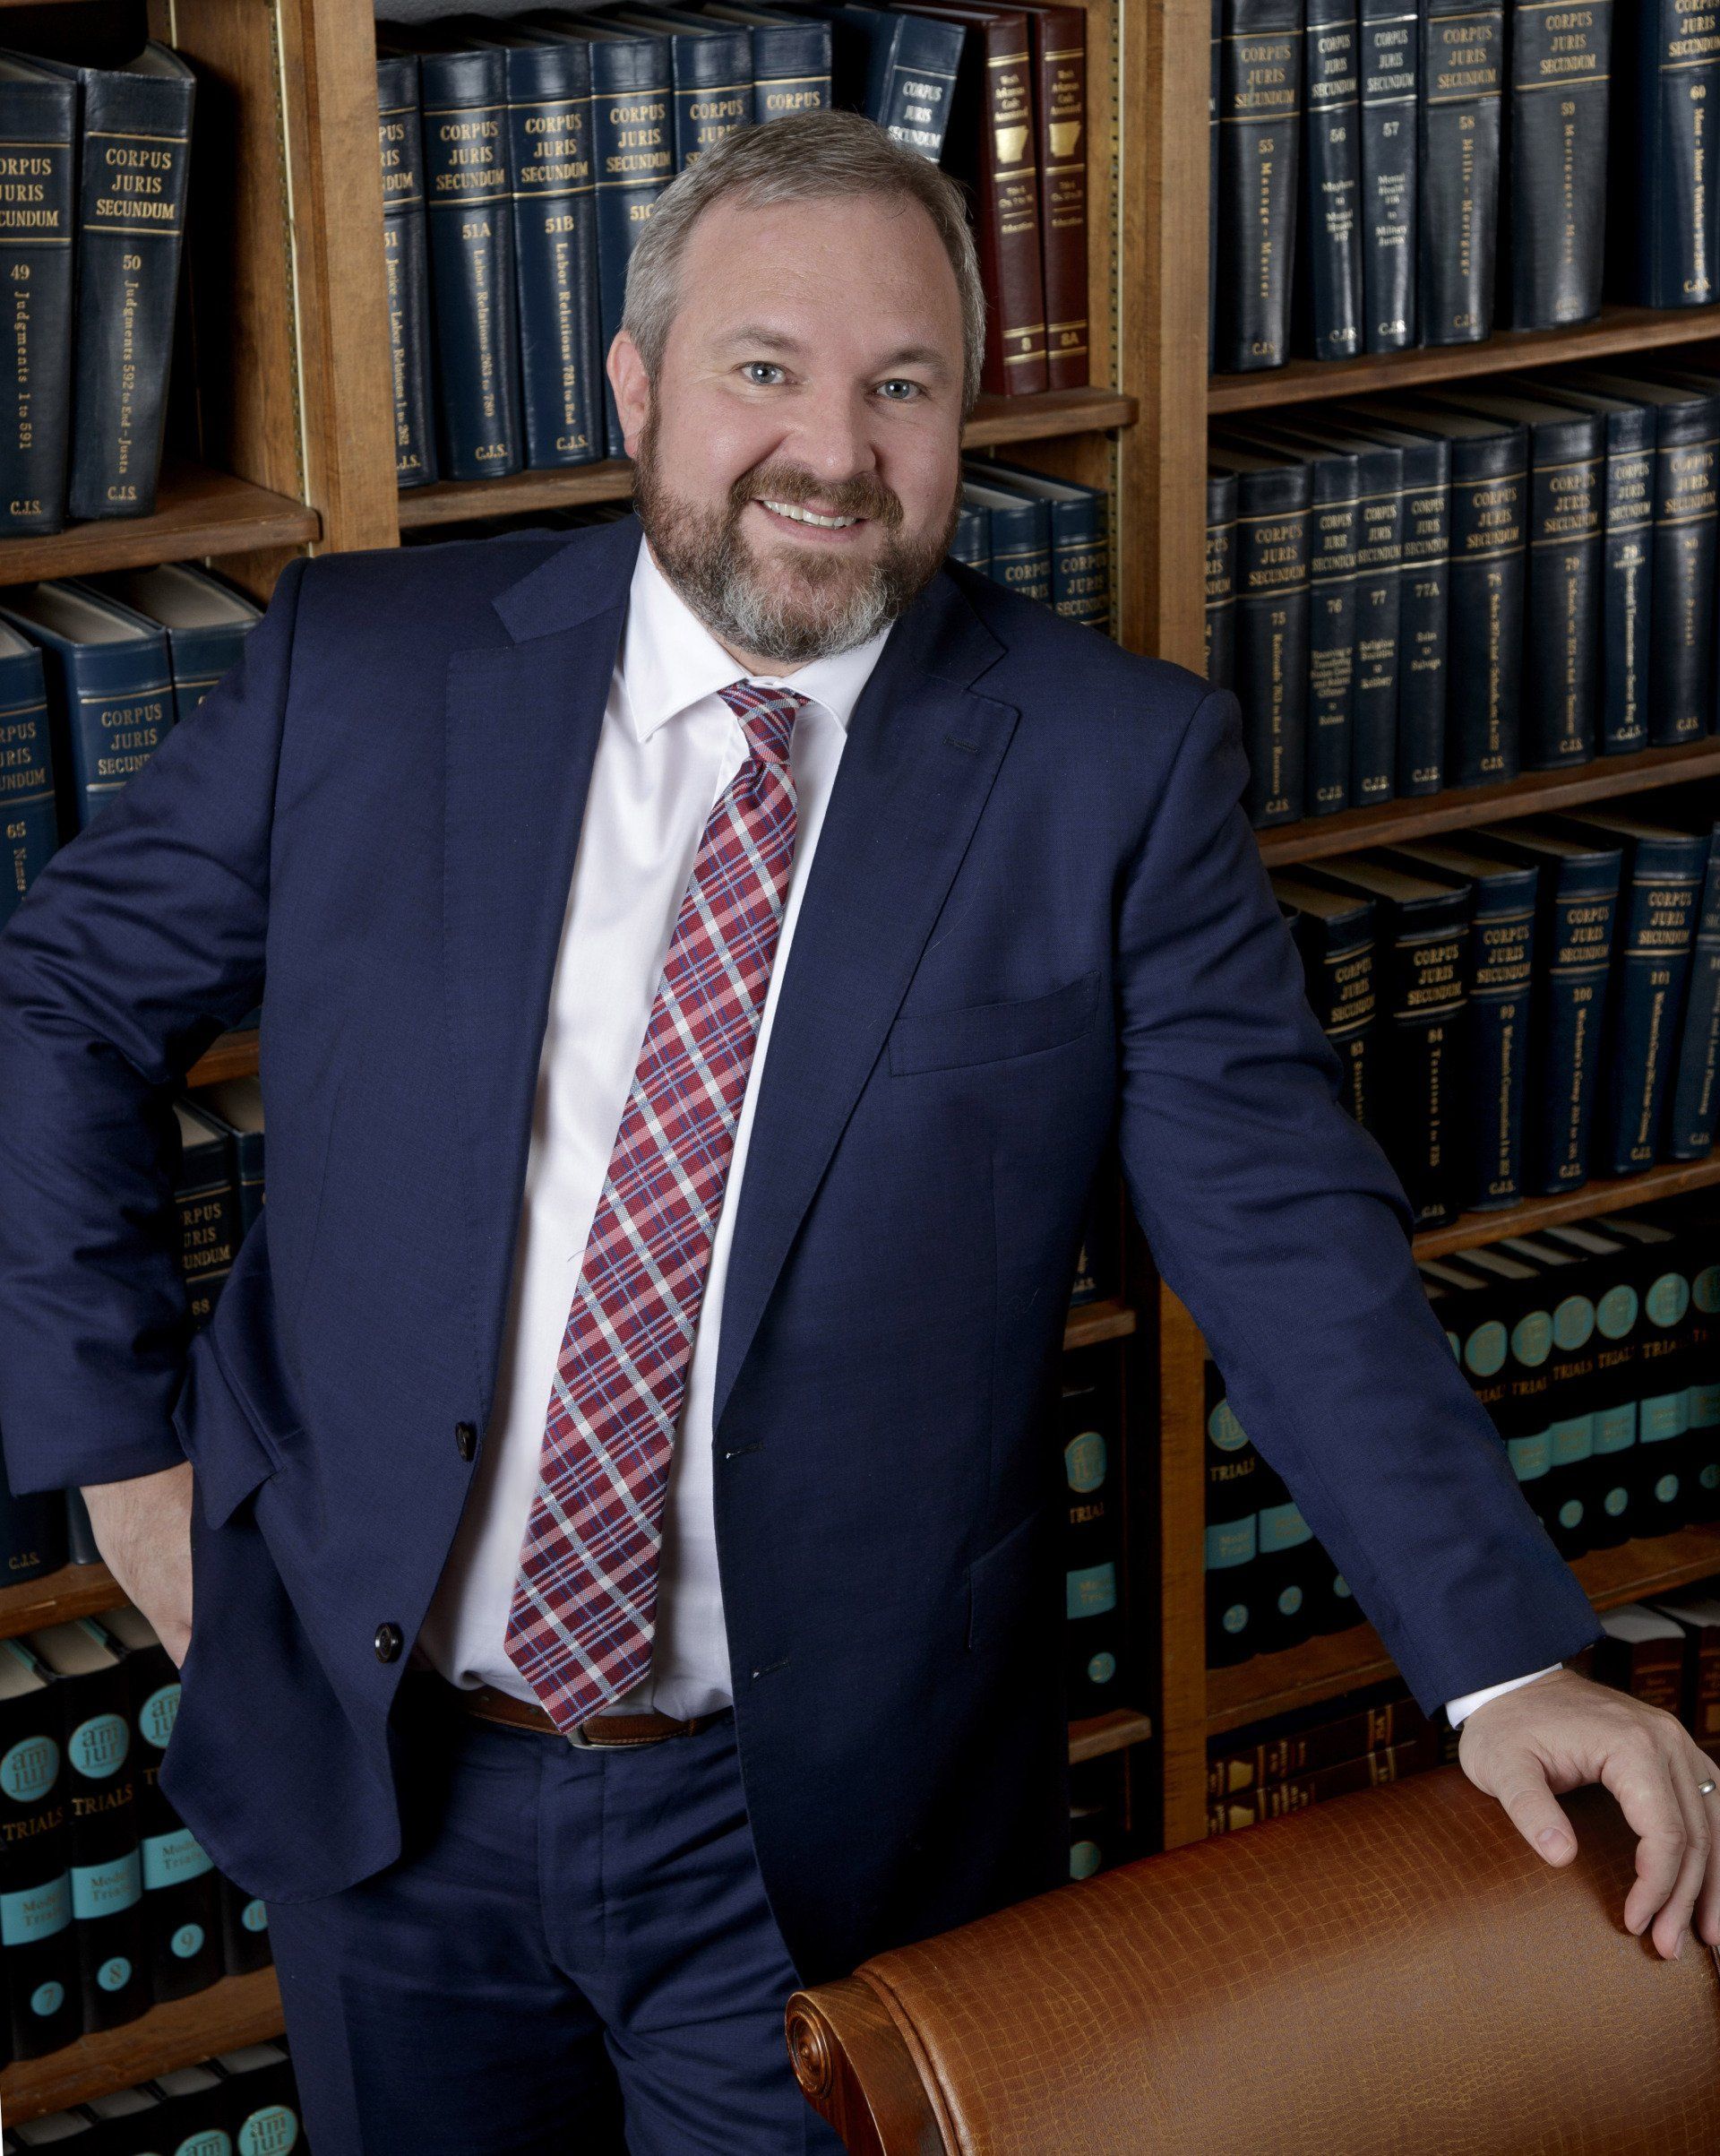 image of david parker arkansas attorney